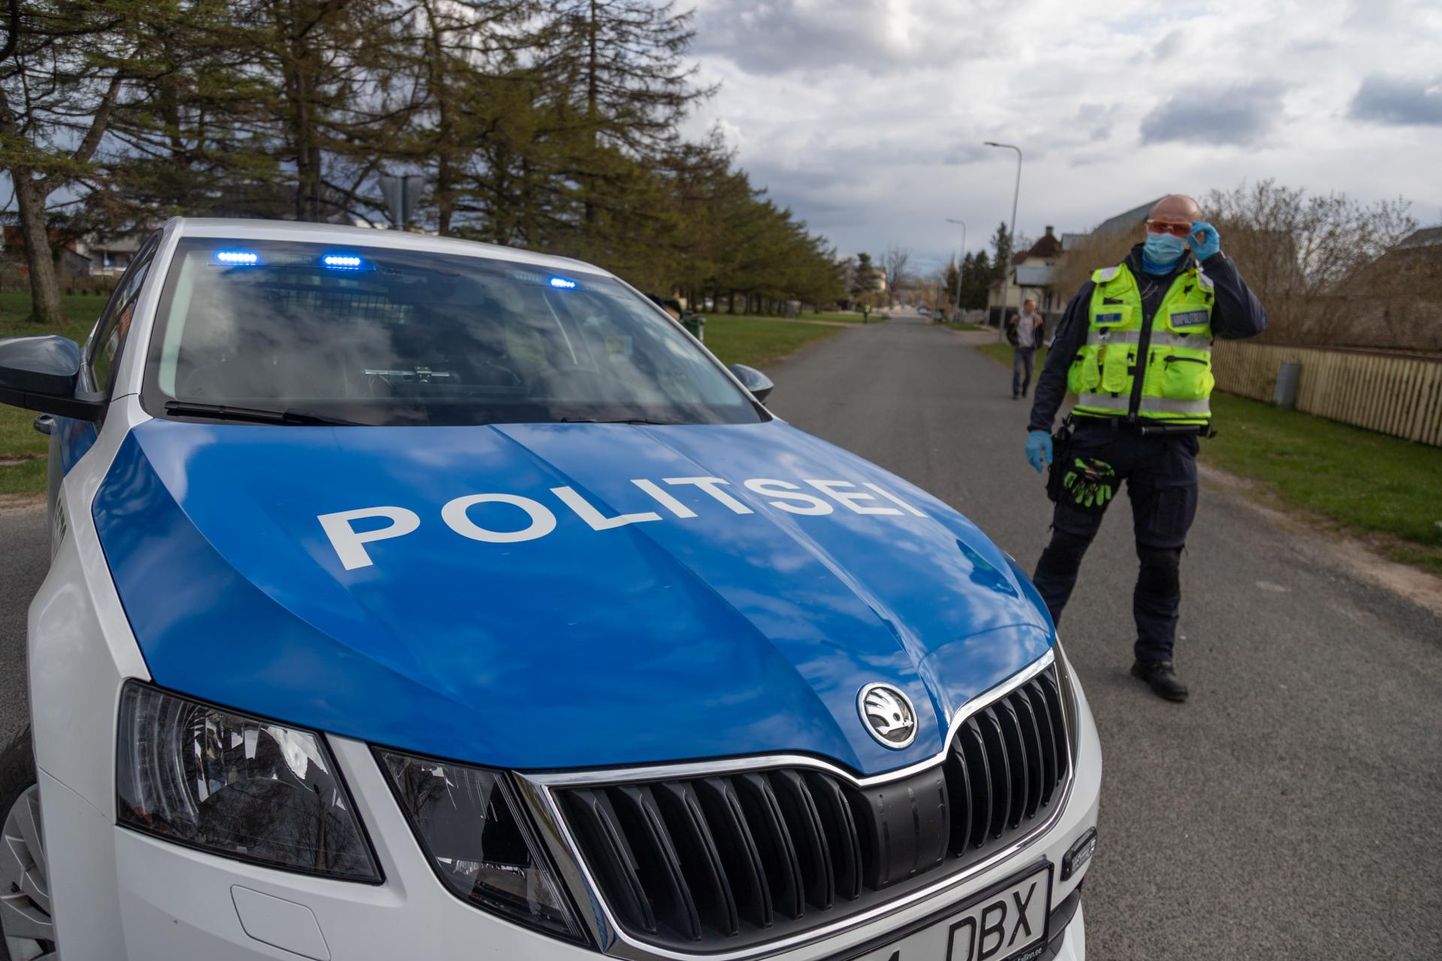 Politsei reidi tulemused Viljandis olid pehmelt öeldes nutused, sest pea sajakonnast kontrollitud sõidukist pooltel juhtudel tuvastati mingit laadi rikkumine.